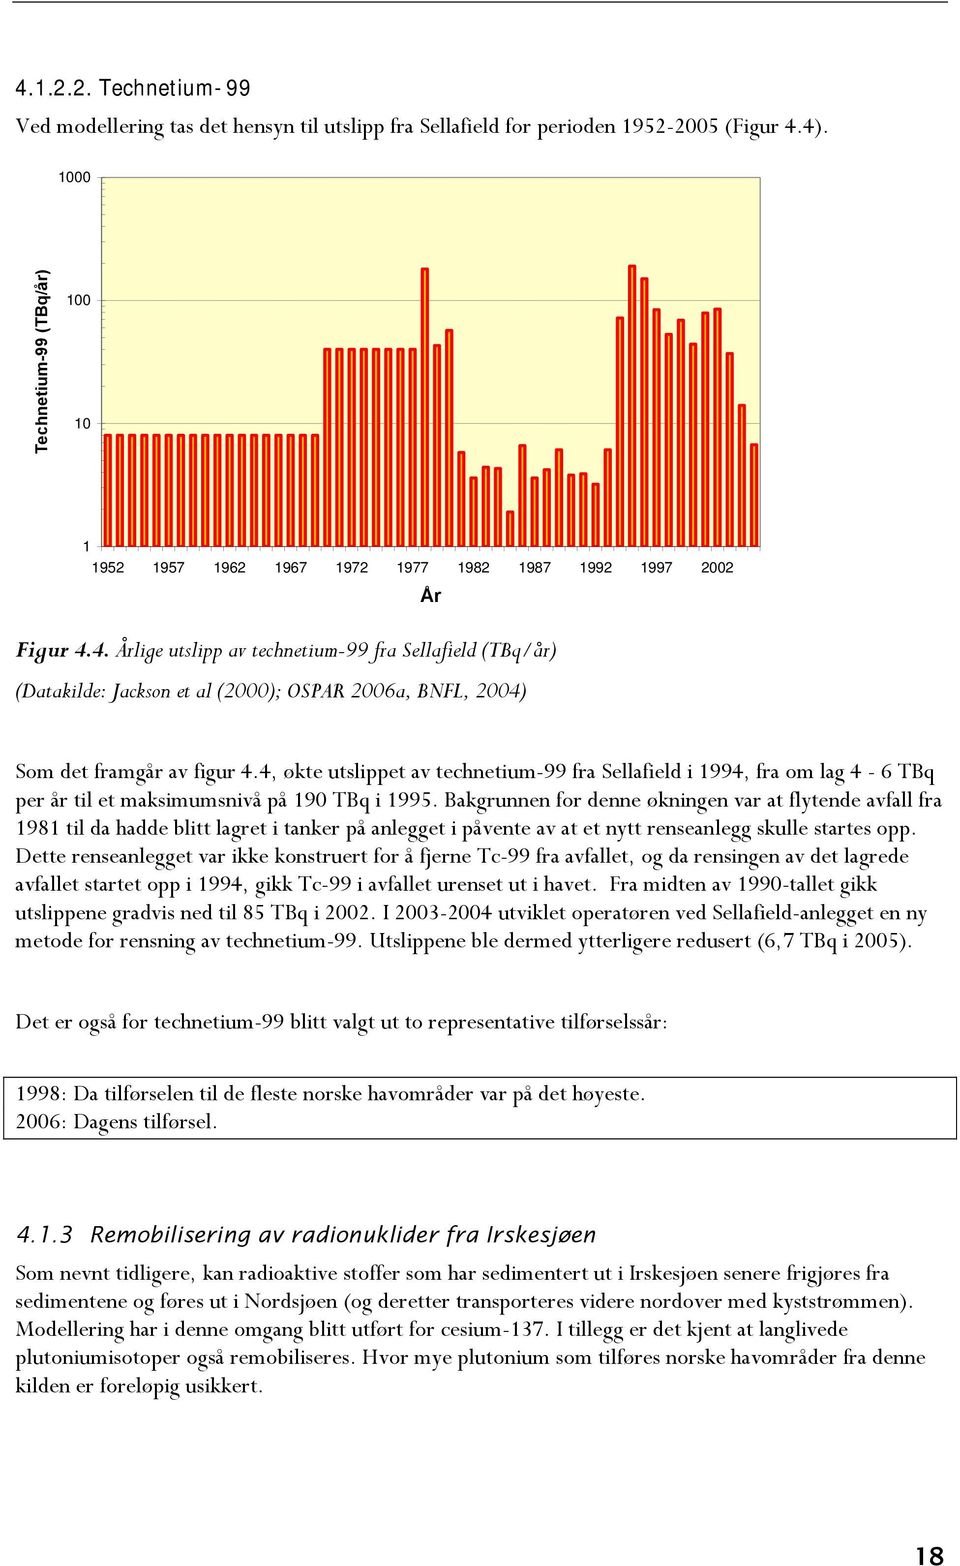 4. Årlige utslipp av technetium-99 fra Sellafield (TBq/år) (Datakilde: Jackson et al (2000); OSPAR 2006a, BNFL, 2004) År Som det framgår av figur 4.